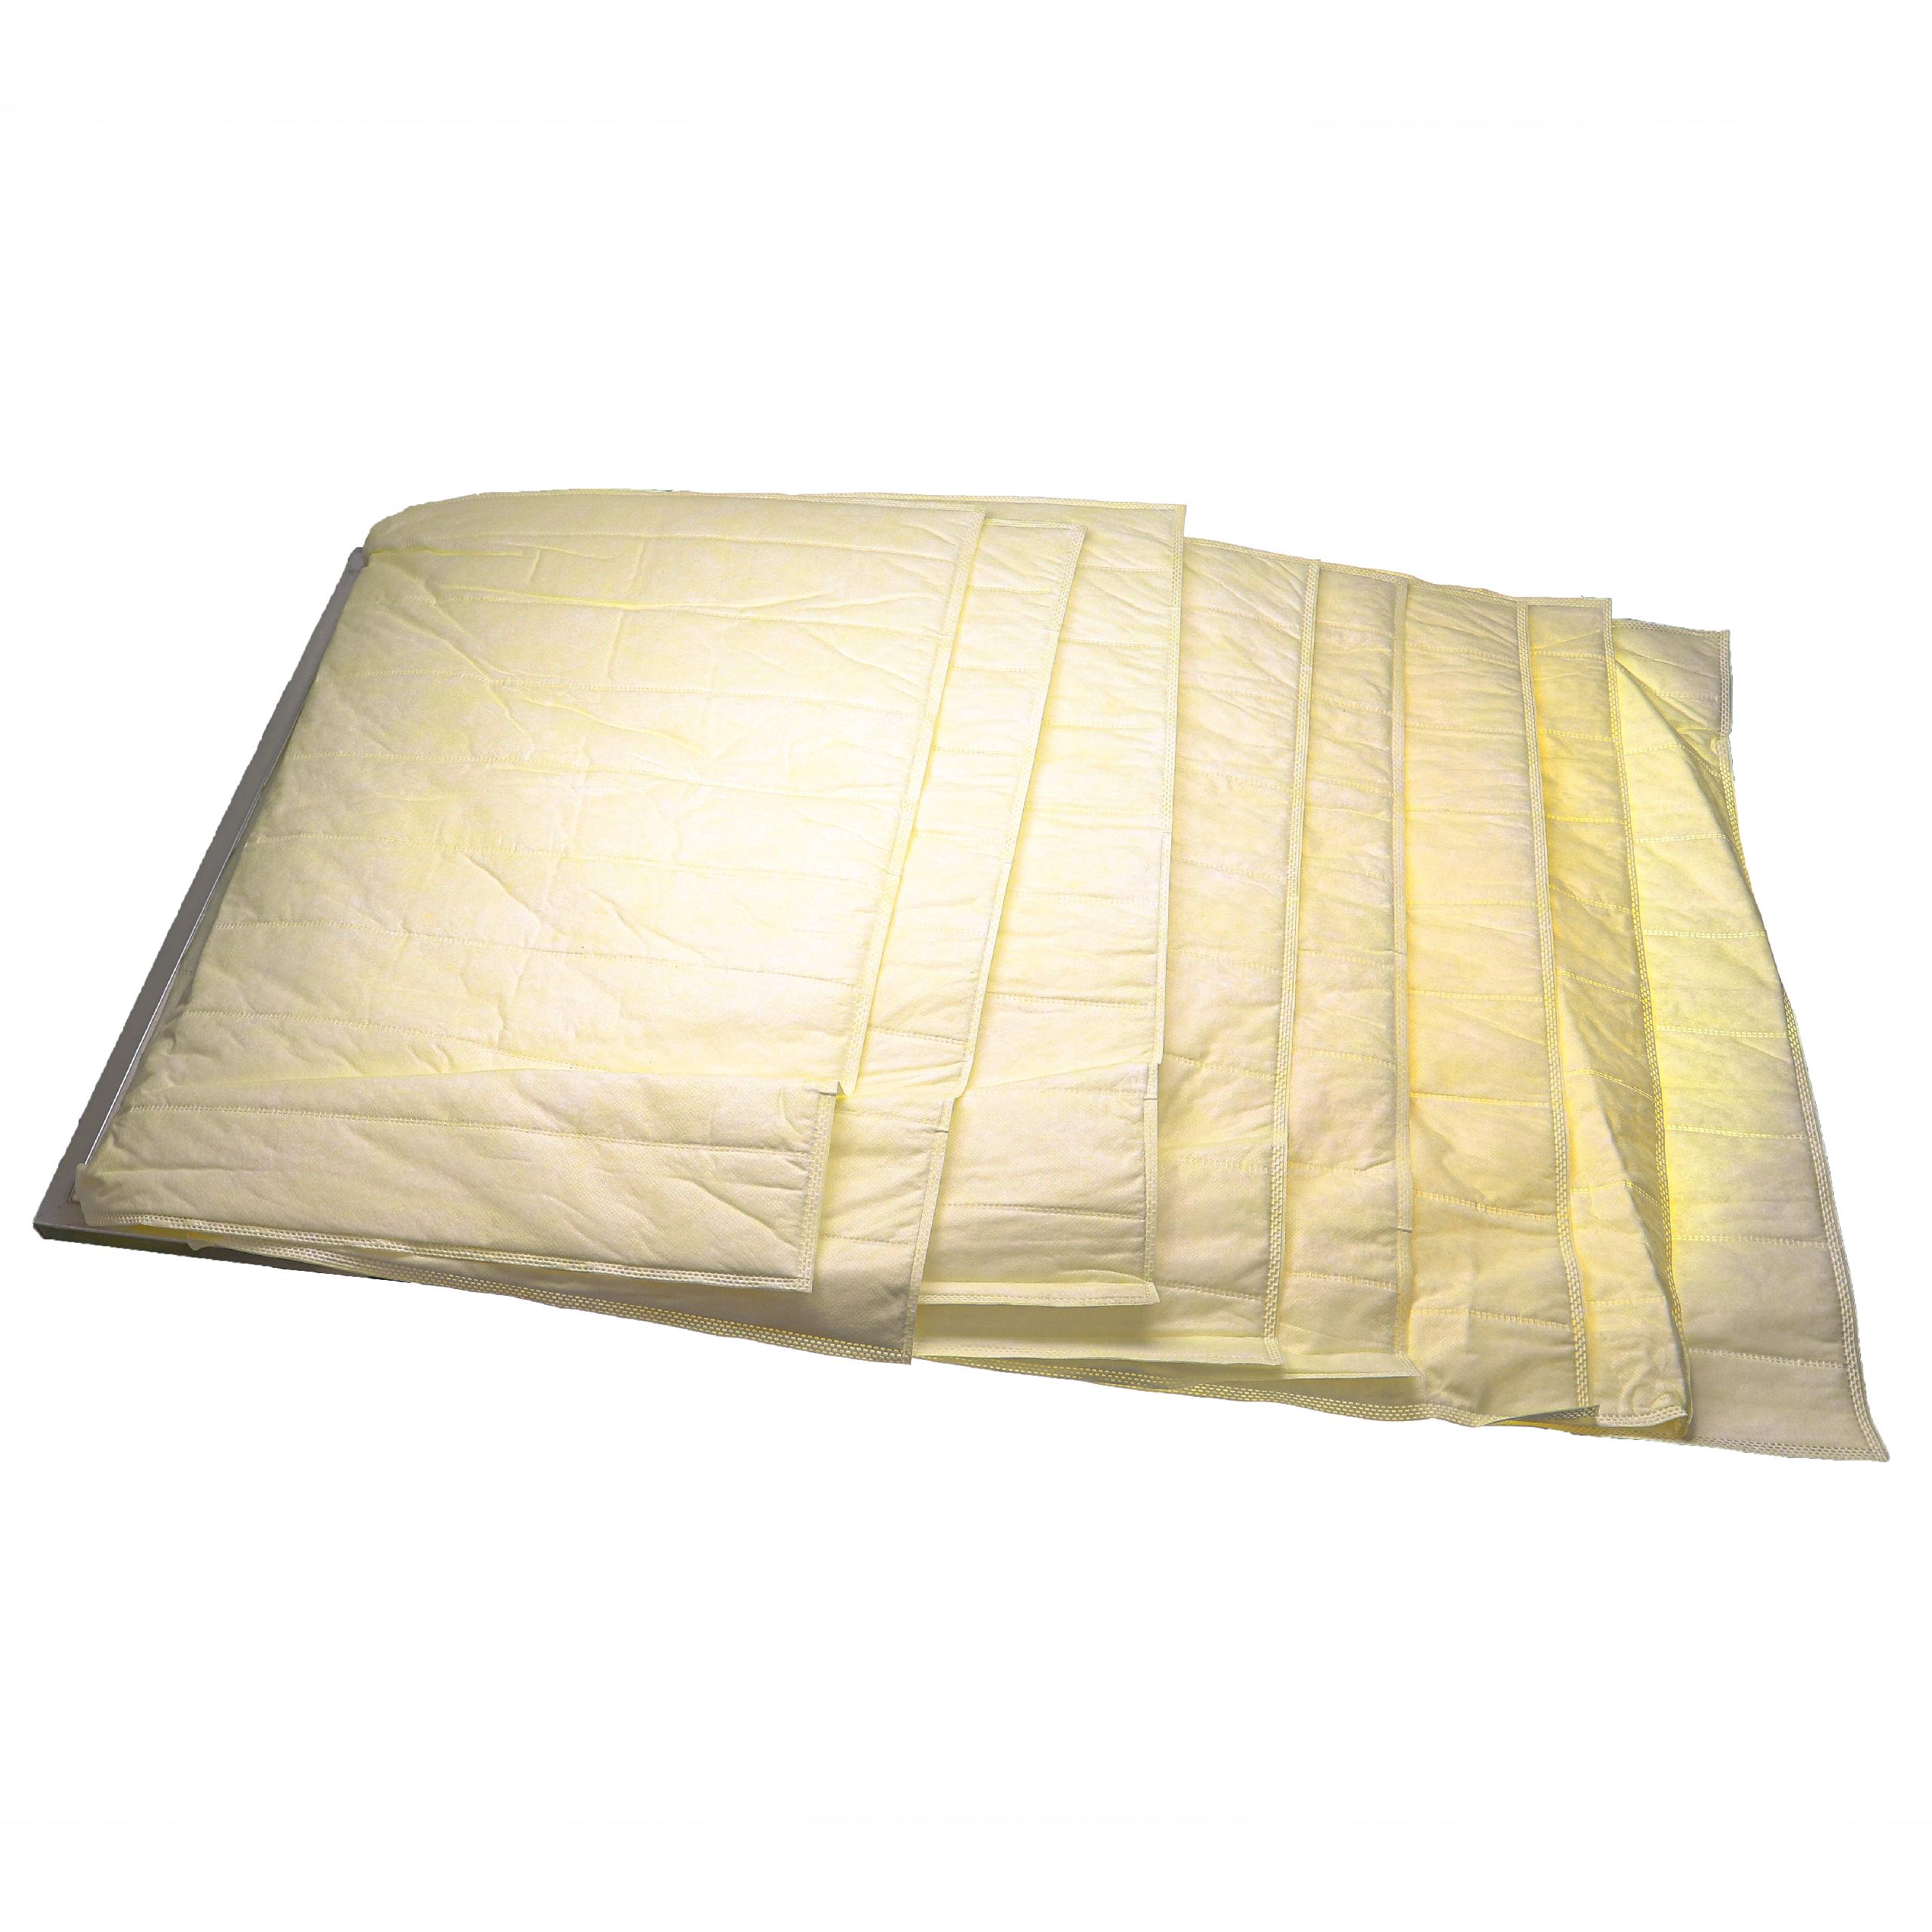 Taschenfilter F7 passend für Klimaanlagen, Lüftungsanlagen - 52,5 x 59,2 x 59,2 cm